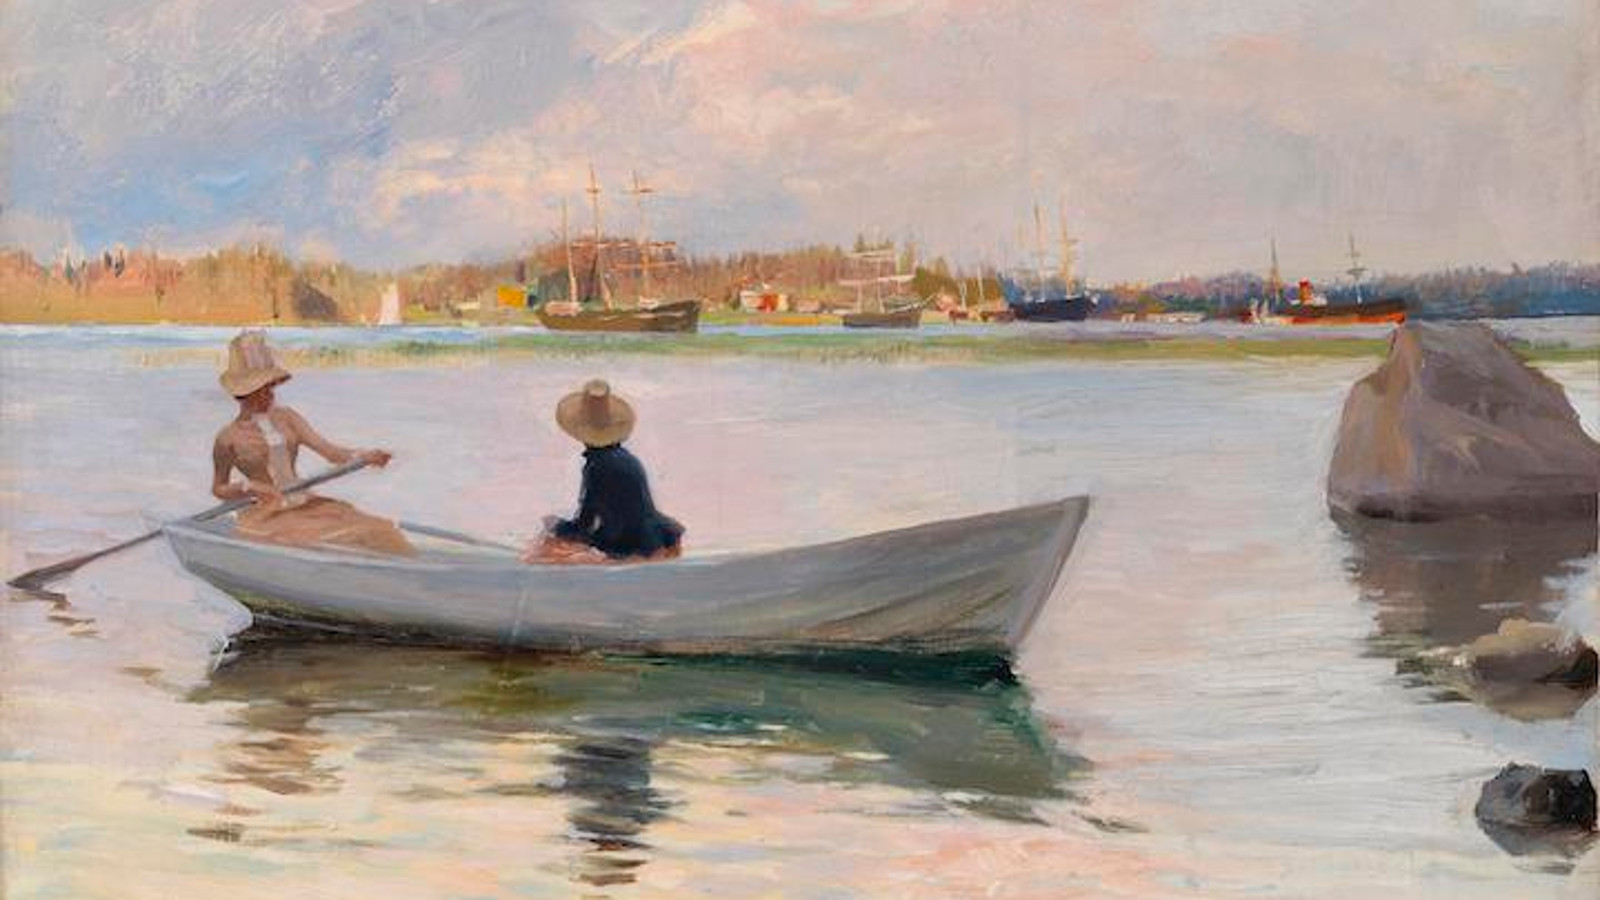 Kuvassa on etualalla vene lahdella ja siinä on tyttöjä soutelemassa. Veteen heijastuu harmahtavia poutapilviä ja auringon säteitä.  Kauempana näkyy rantaa ja valkeita rakennuksia.